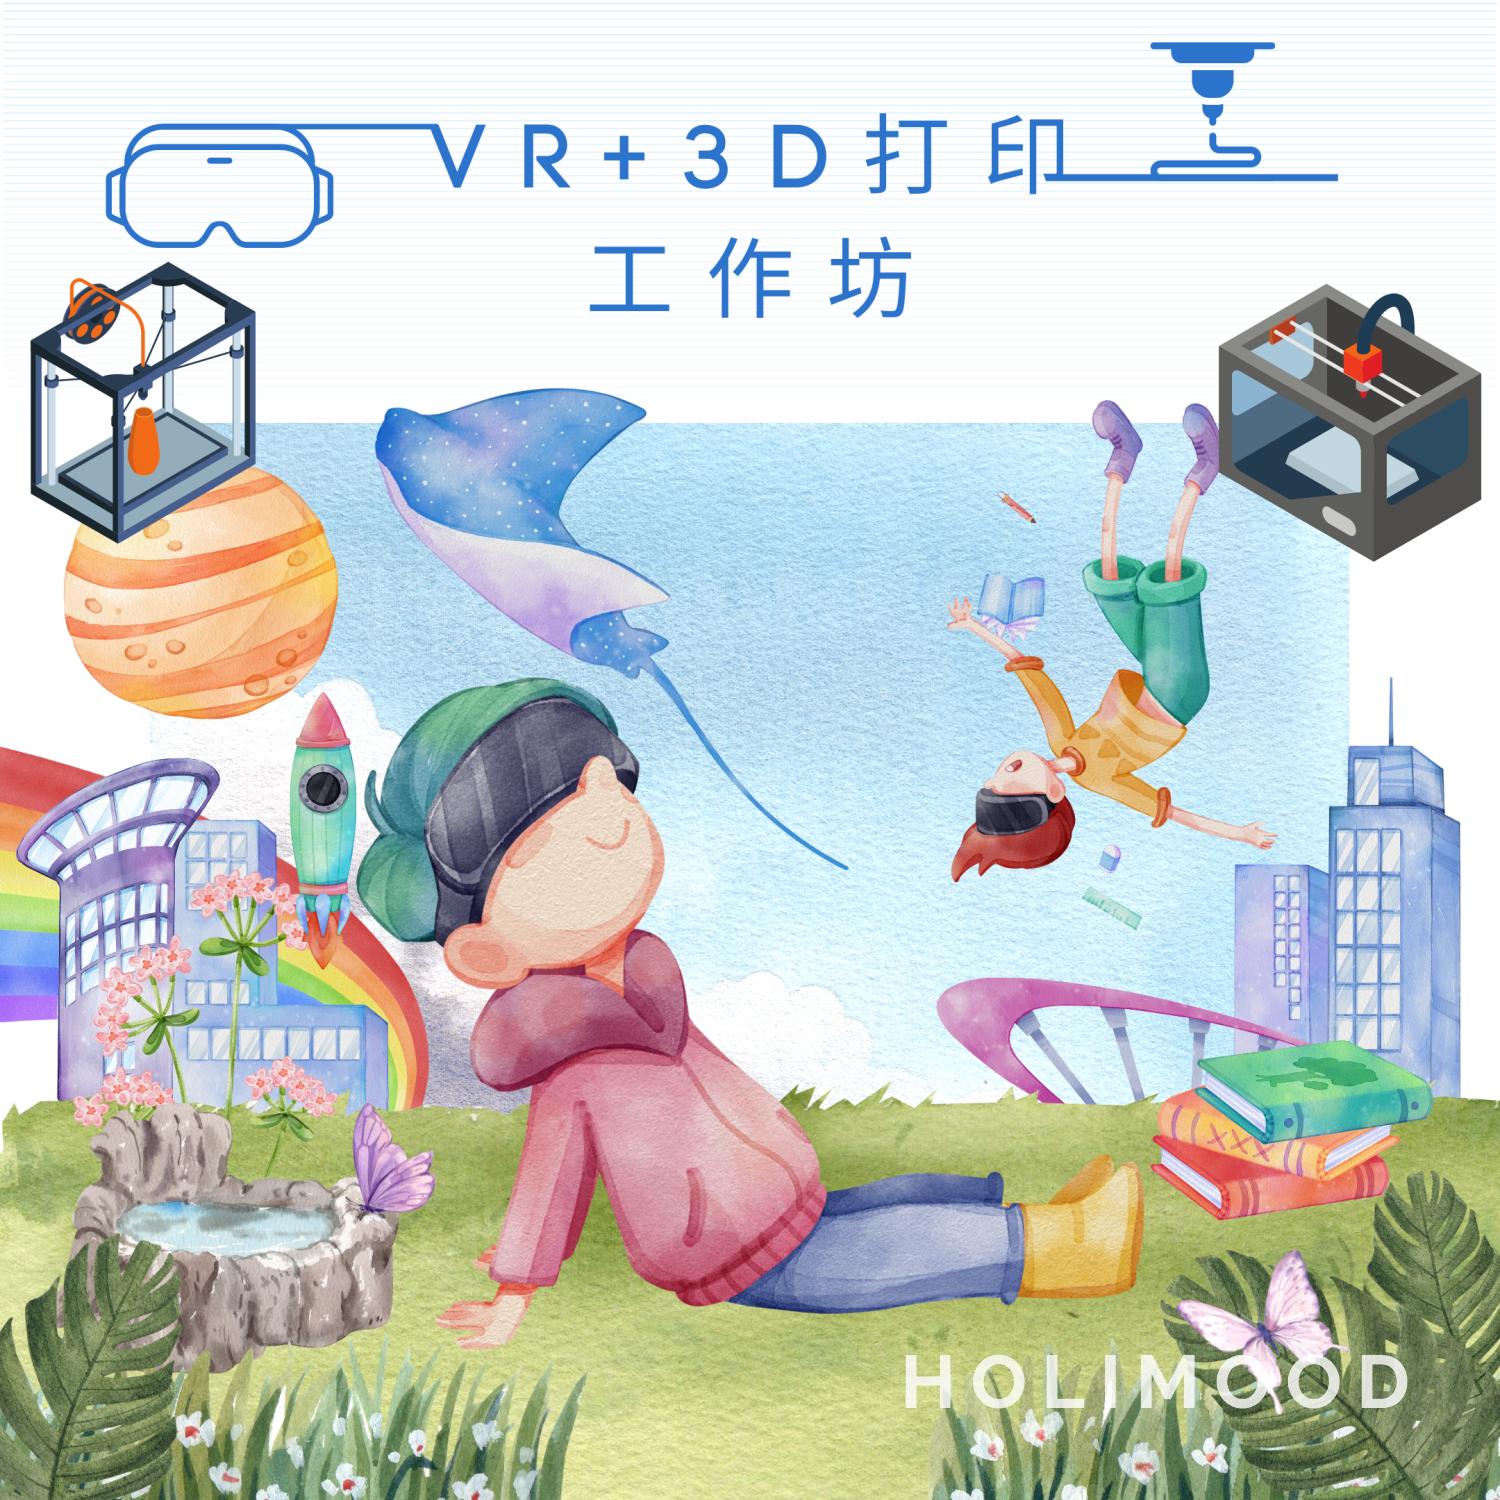 V-Owl Station VR Party 虛擬實境體驗站 VR+3D打印工作坊 2